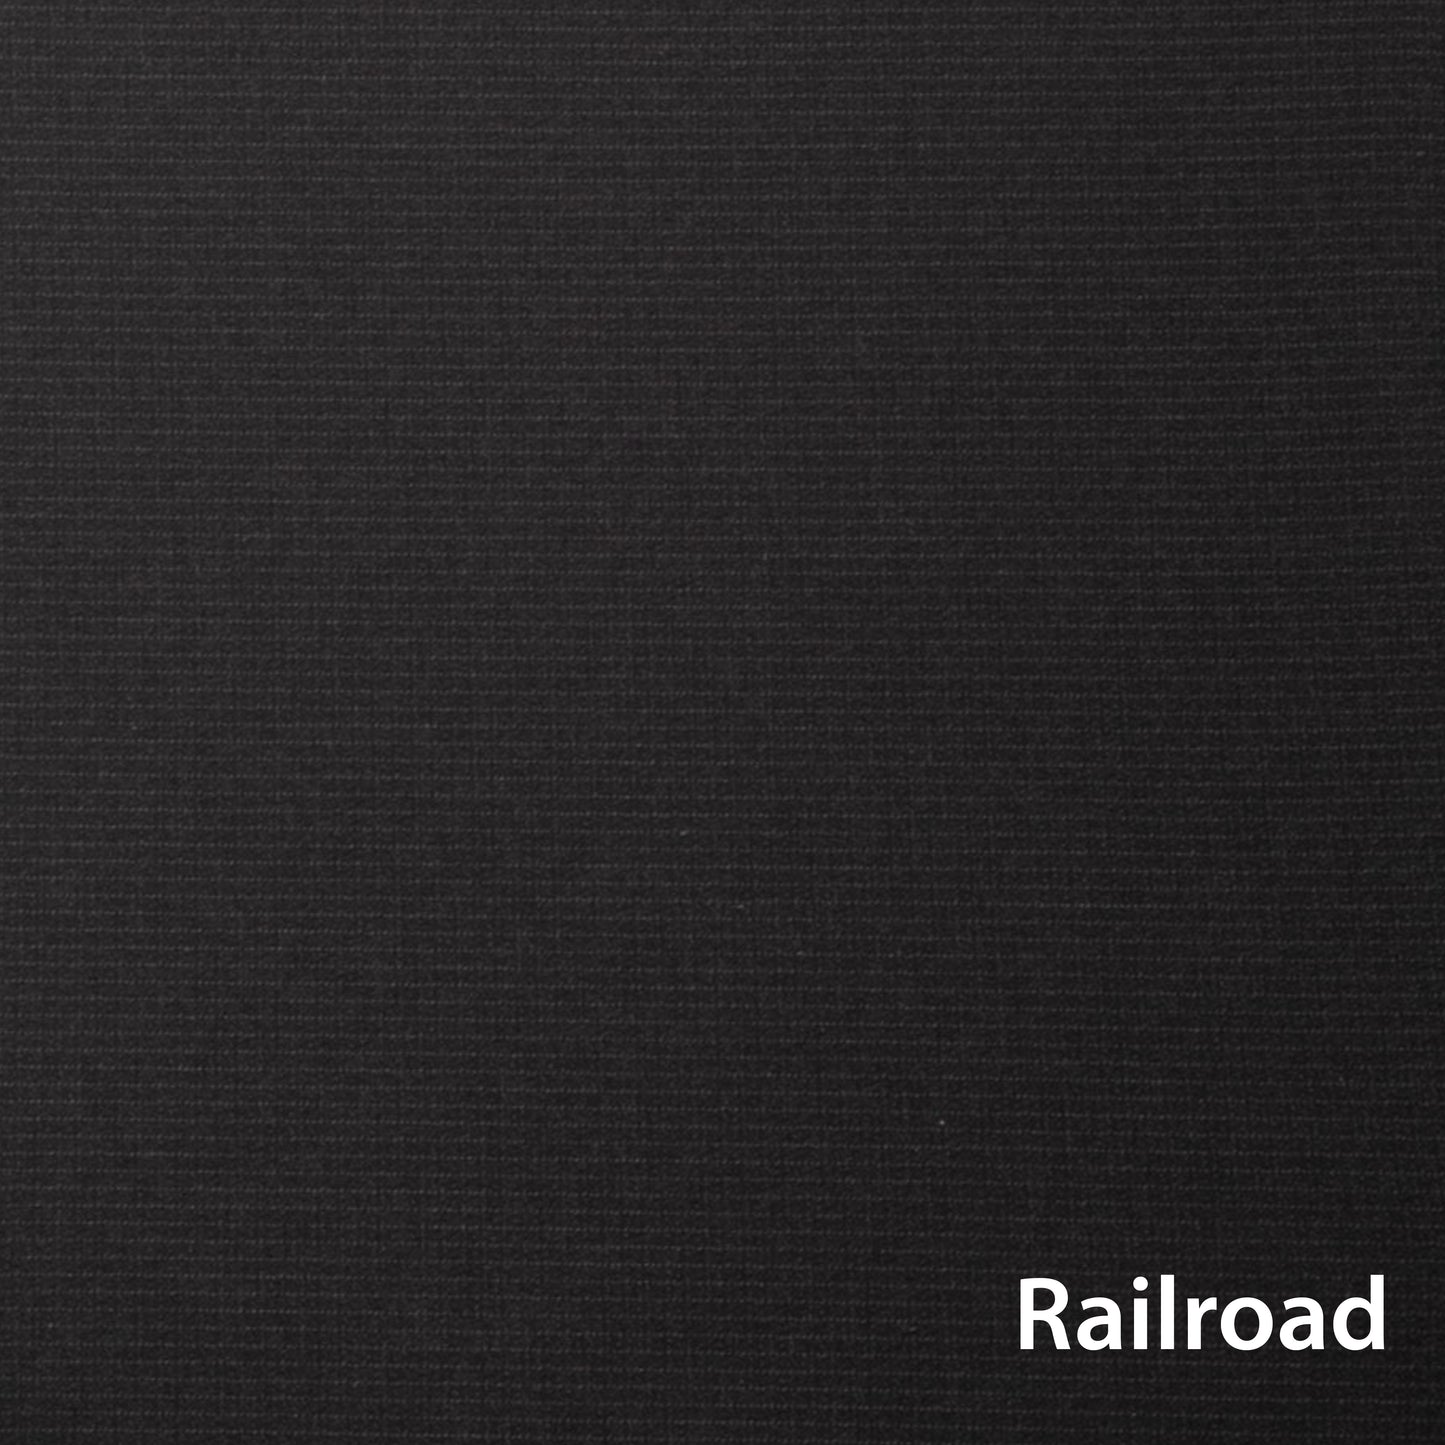 
                  
                    Bumbleride Indie Black + Clek Liing Railroad Travel System
                  
                